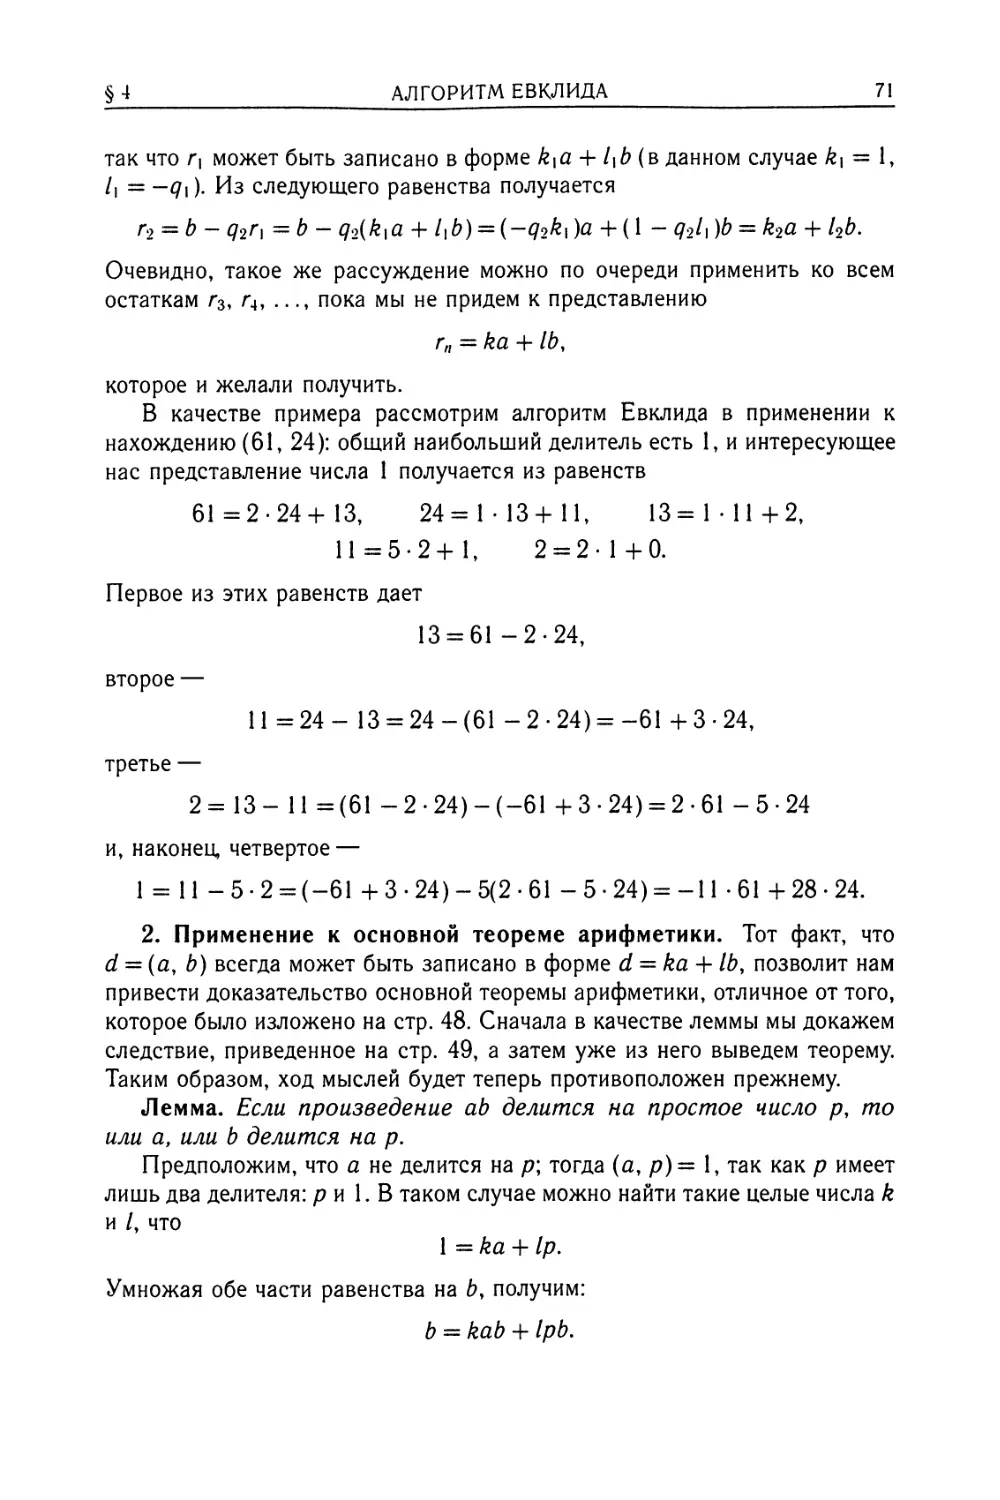 2. Применение к основной теореме арифметики